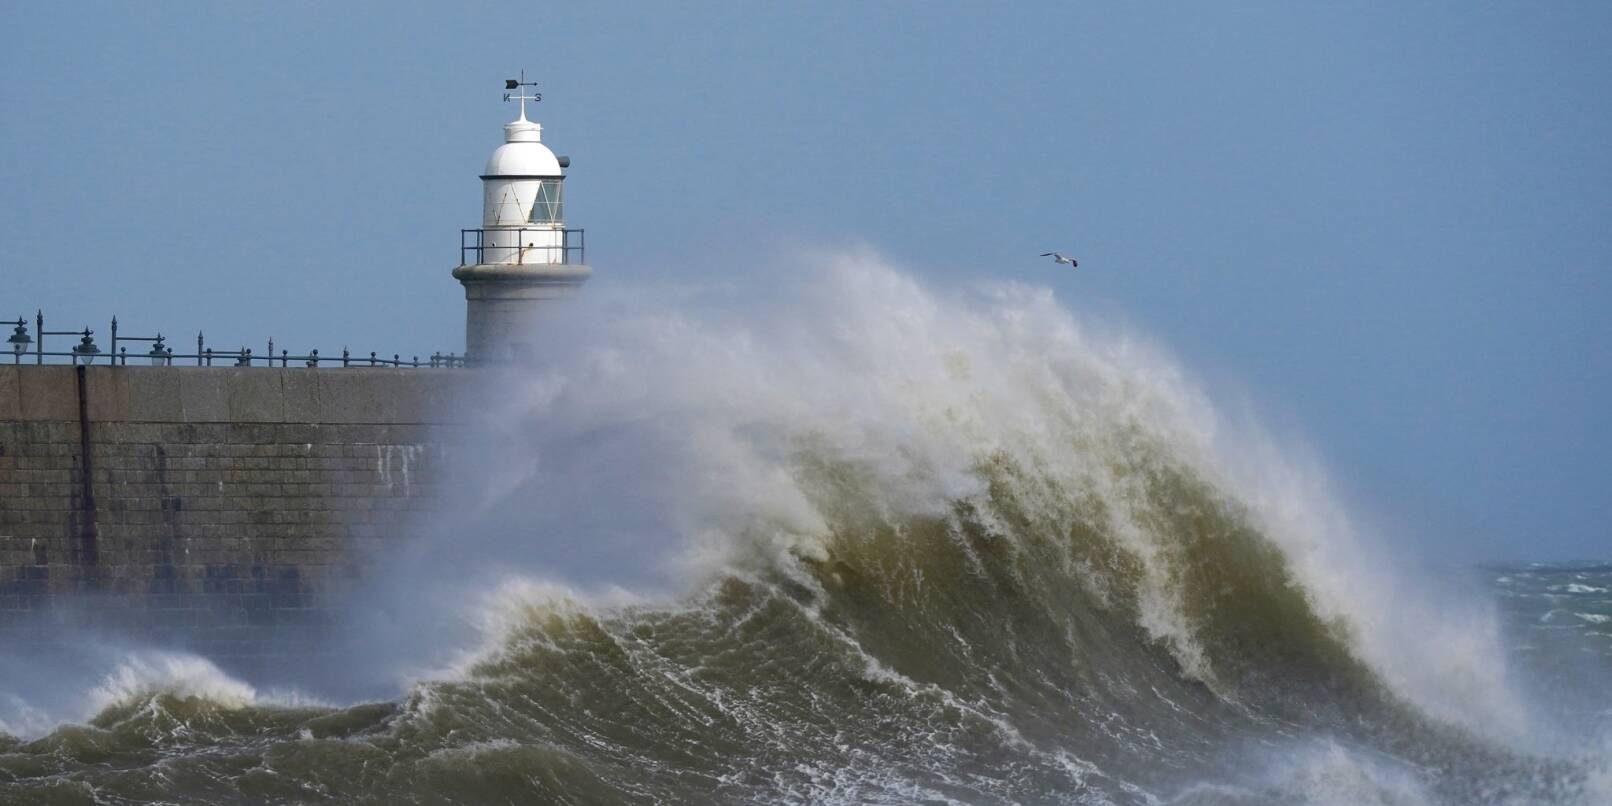 Stürmische Tage im britischen Kent - doch der Leuchtturm hält den Wellen stand.